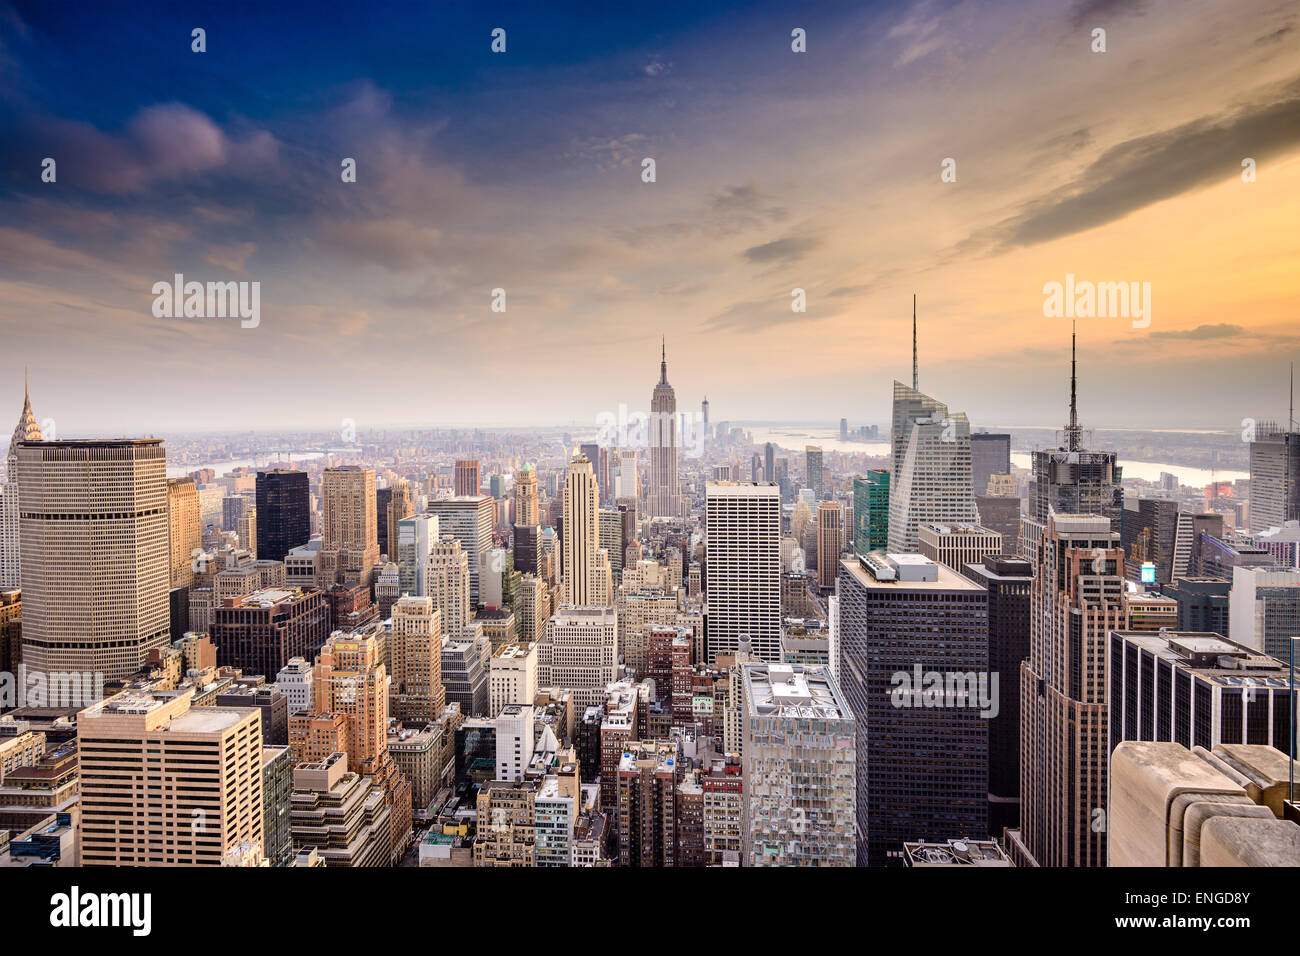 La ville de New York, USA célèbre skyline sur Manhattan. Banque D'Images